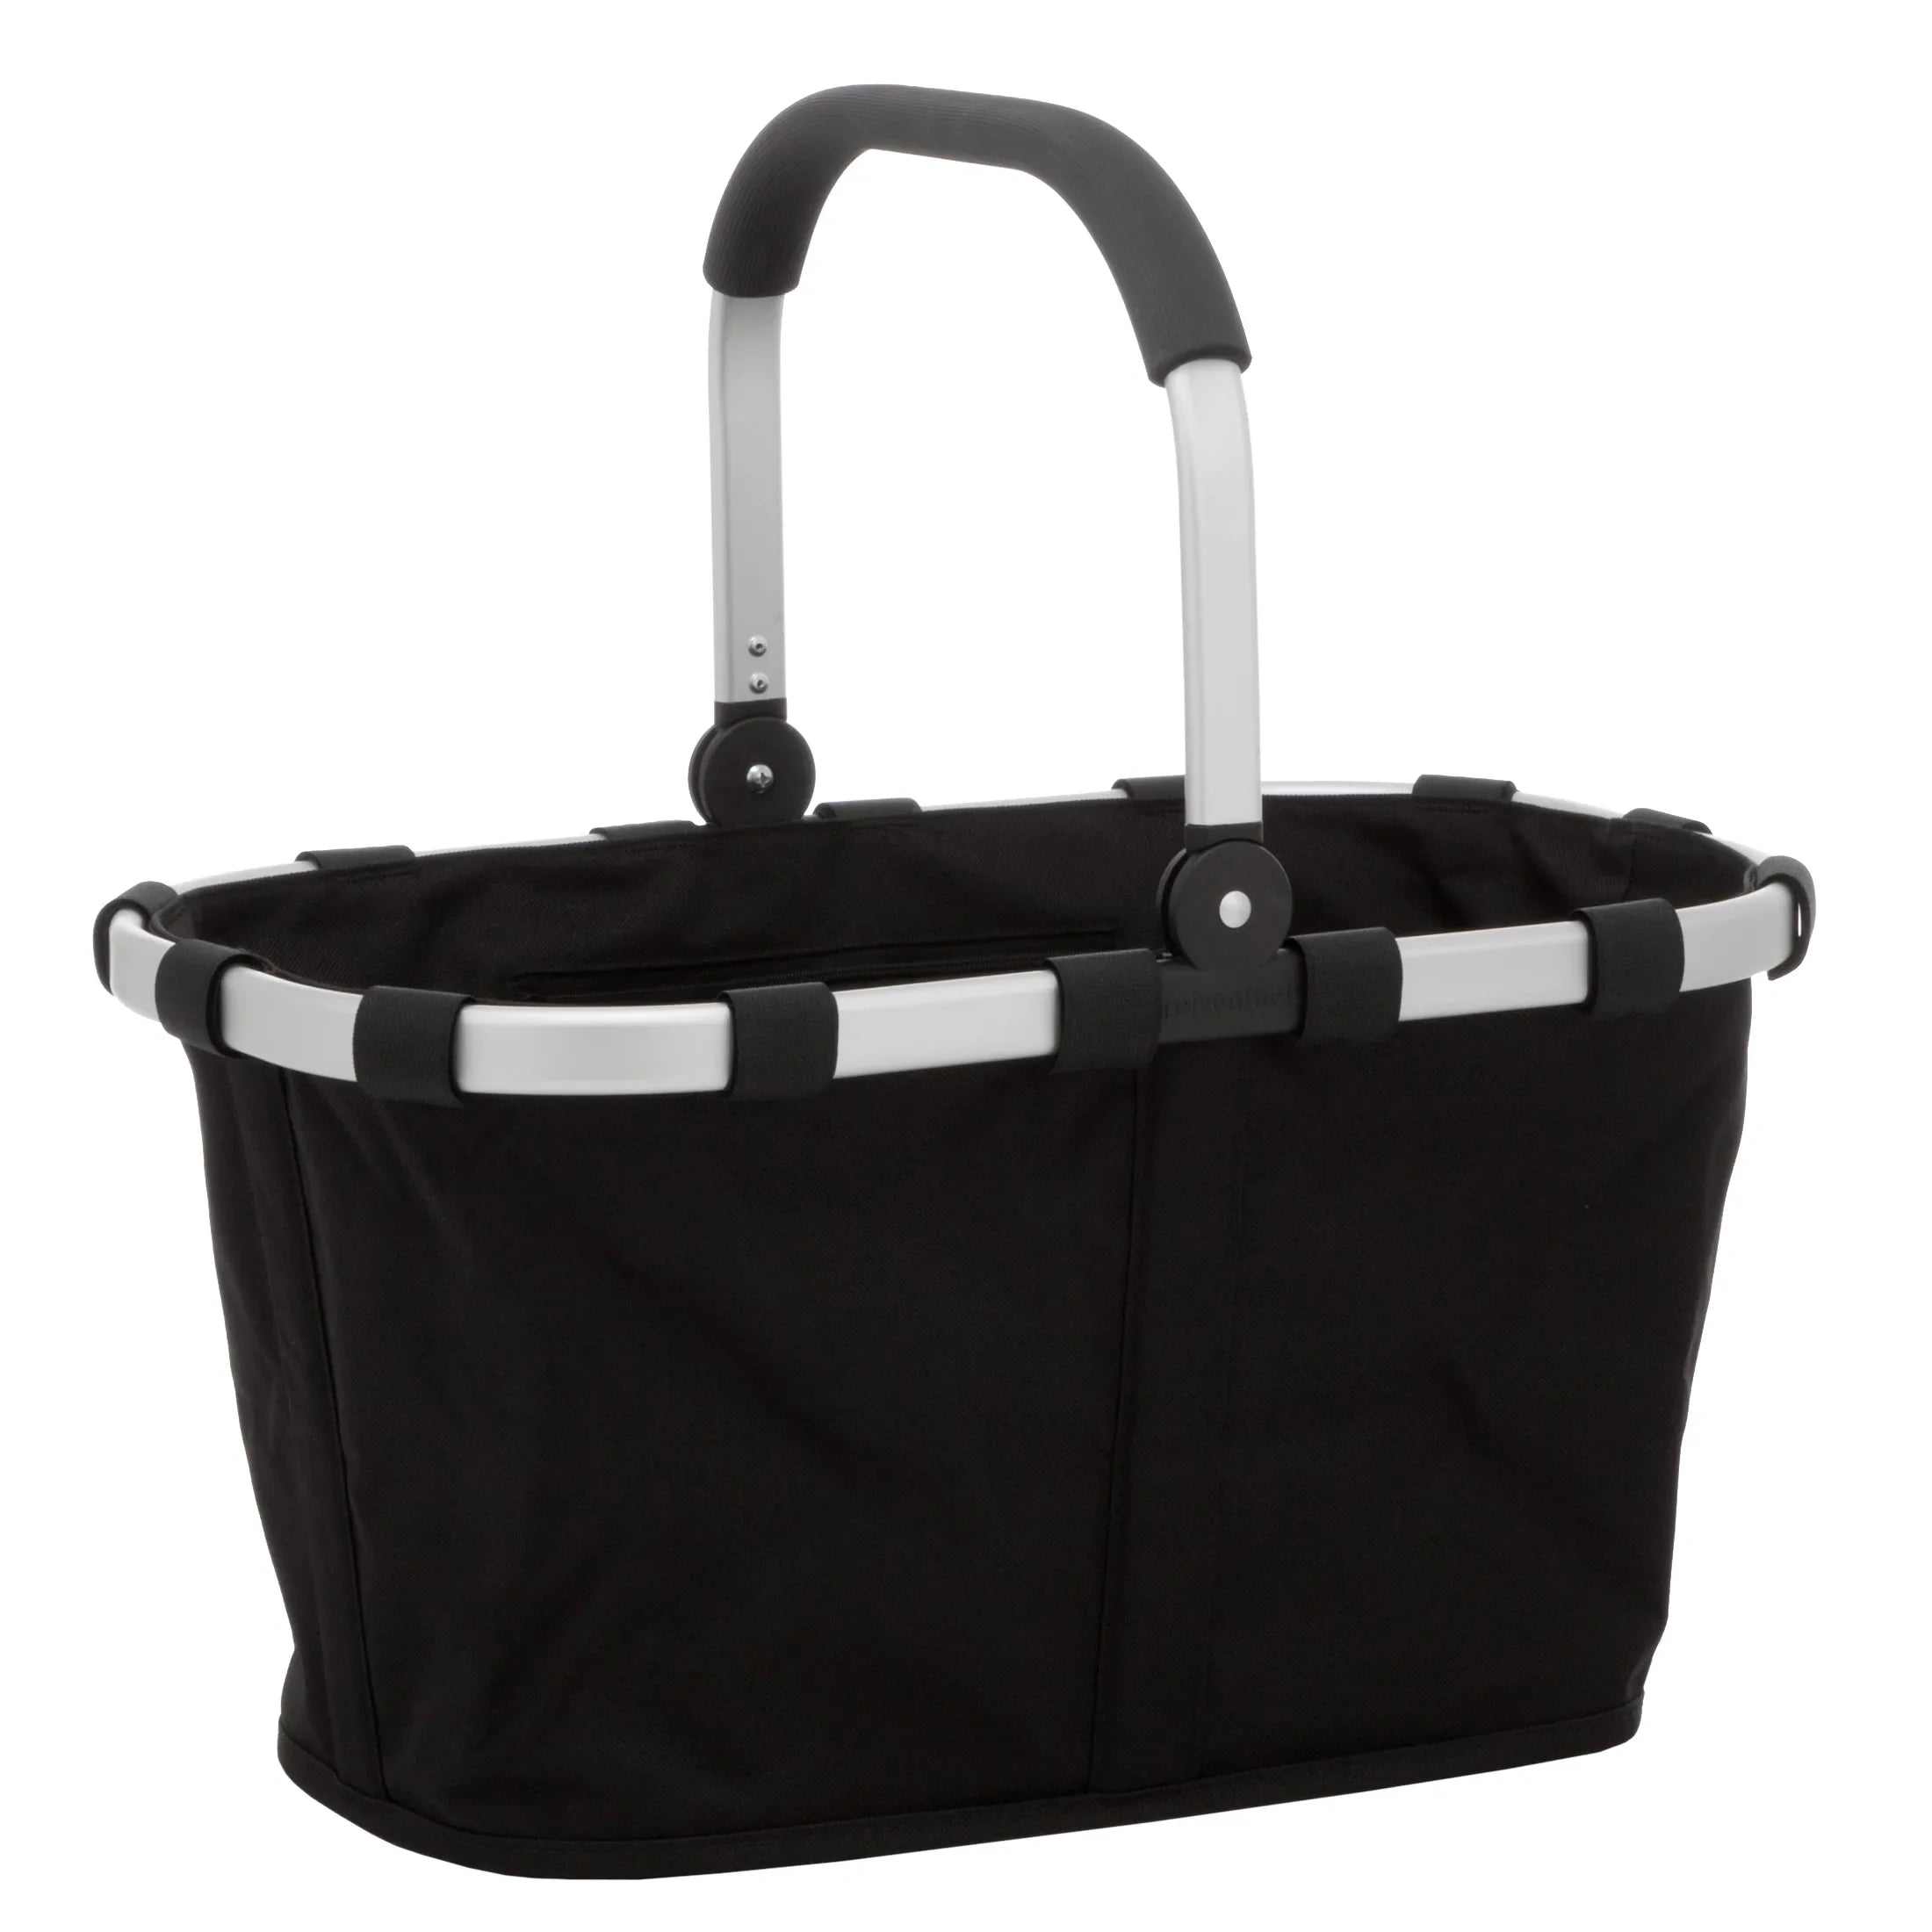 Reisenthel Shopping Carrybag shopping basket 48 cm - black